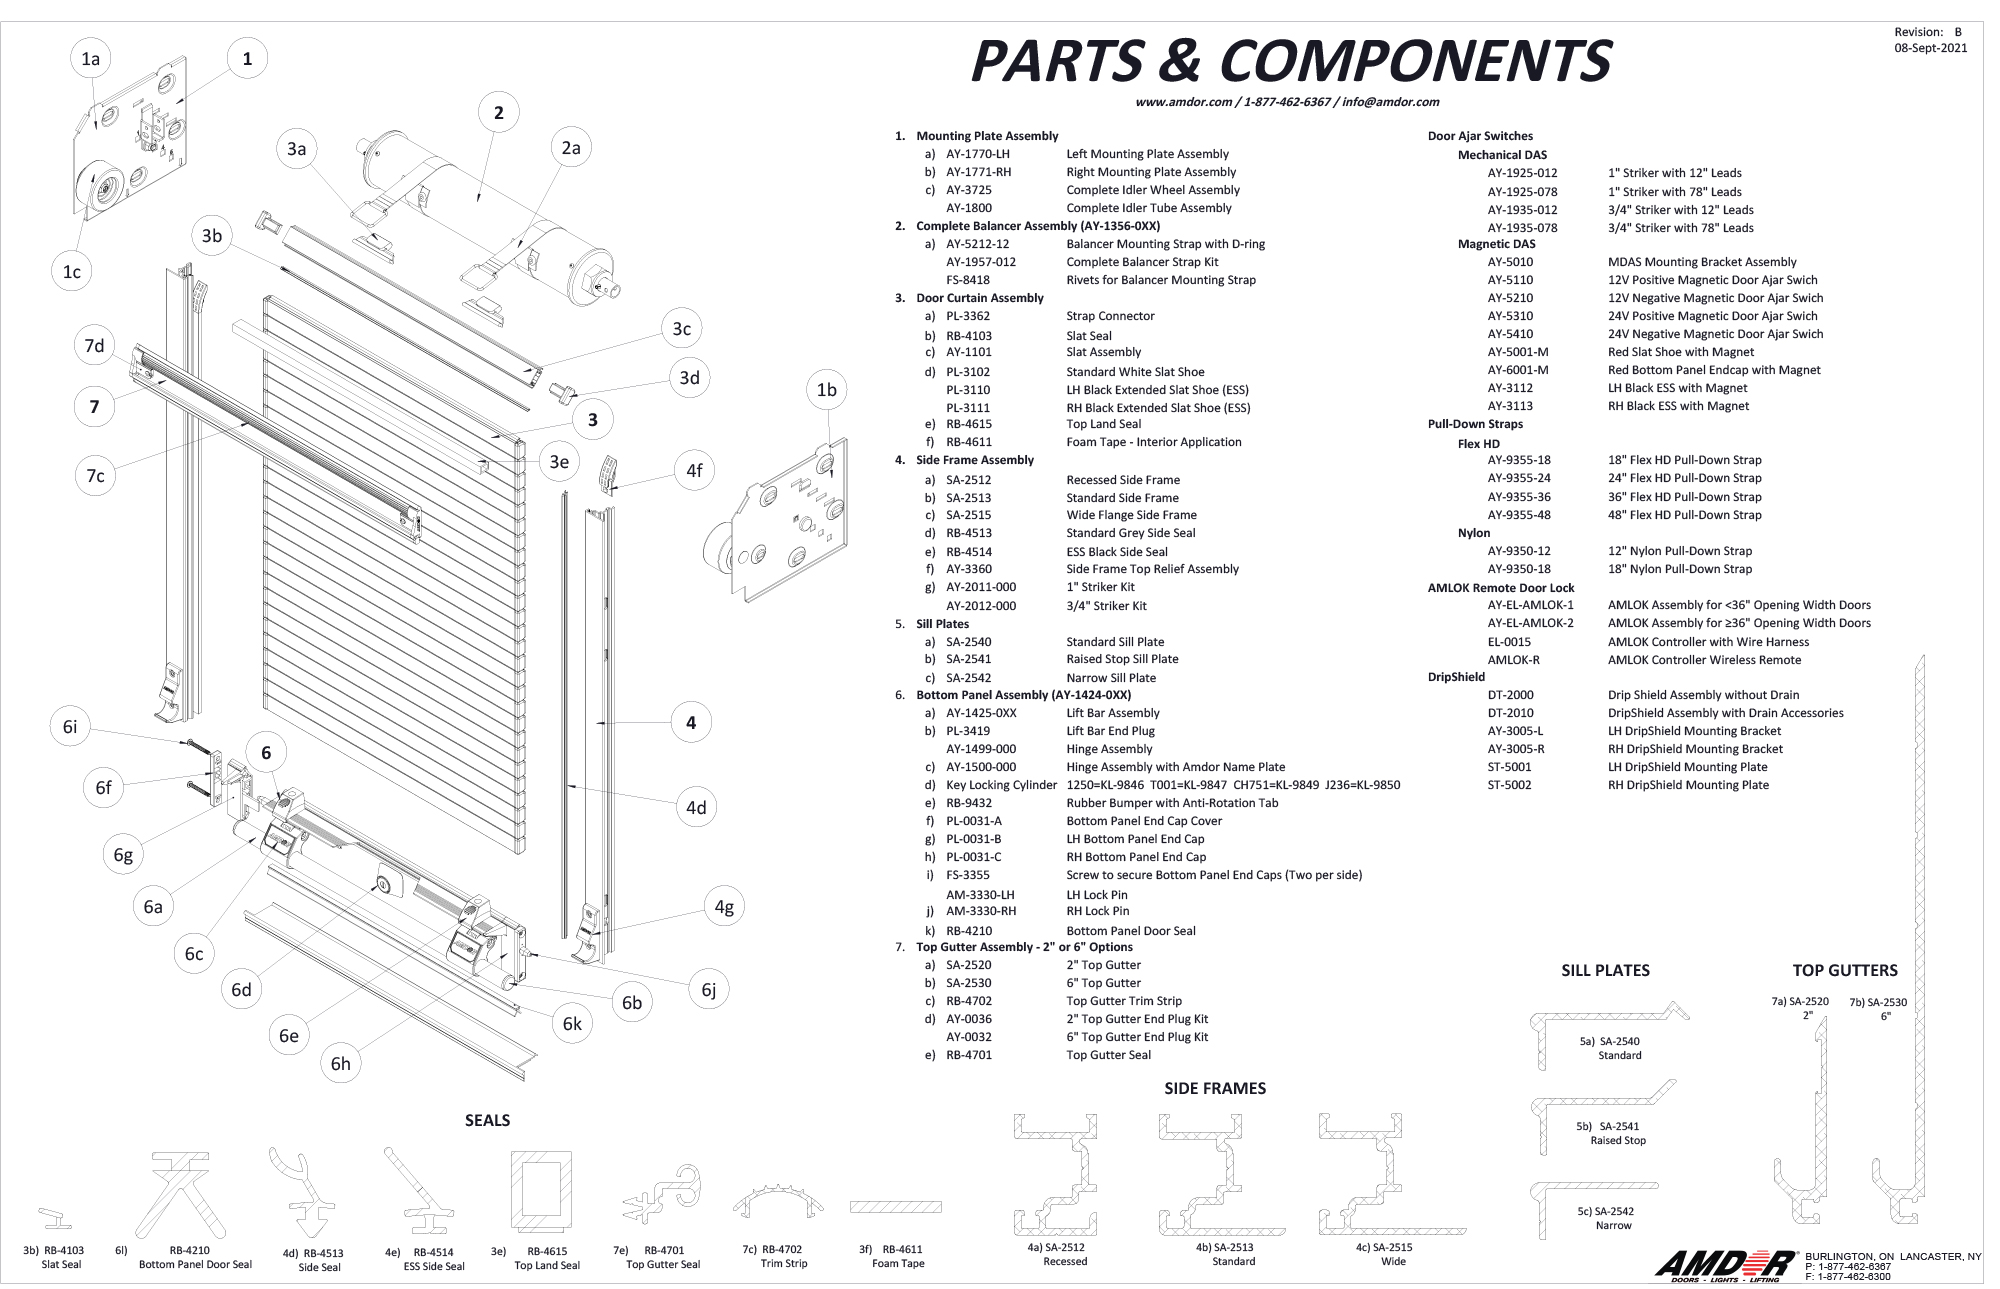 Parts & Components - AMDOR